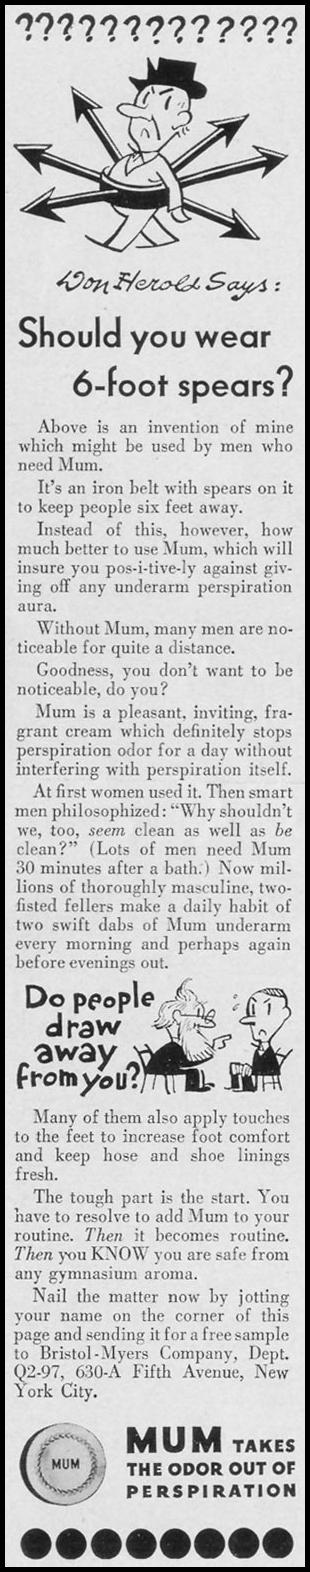 MUM DEODORANT
LIFE
09/27/1937
p. 118